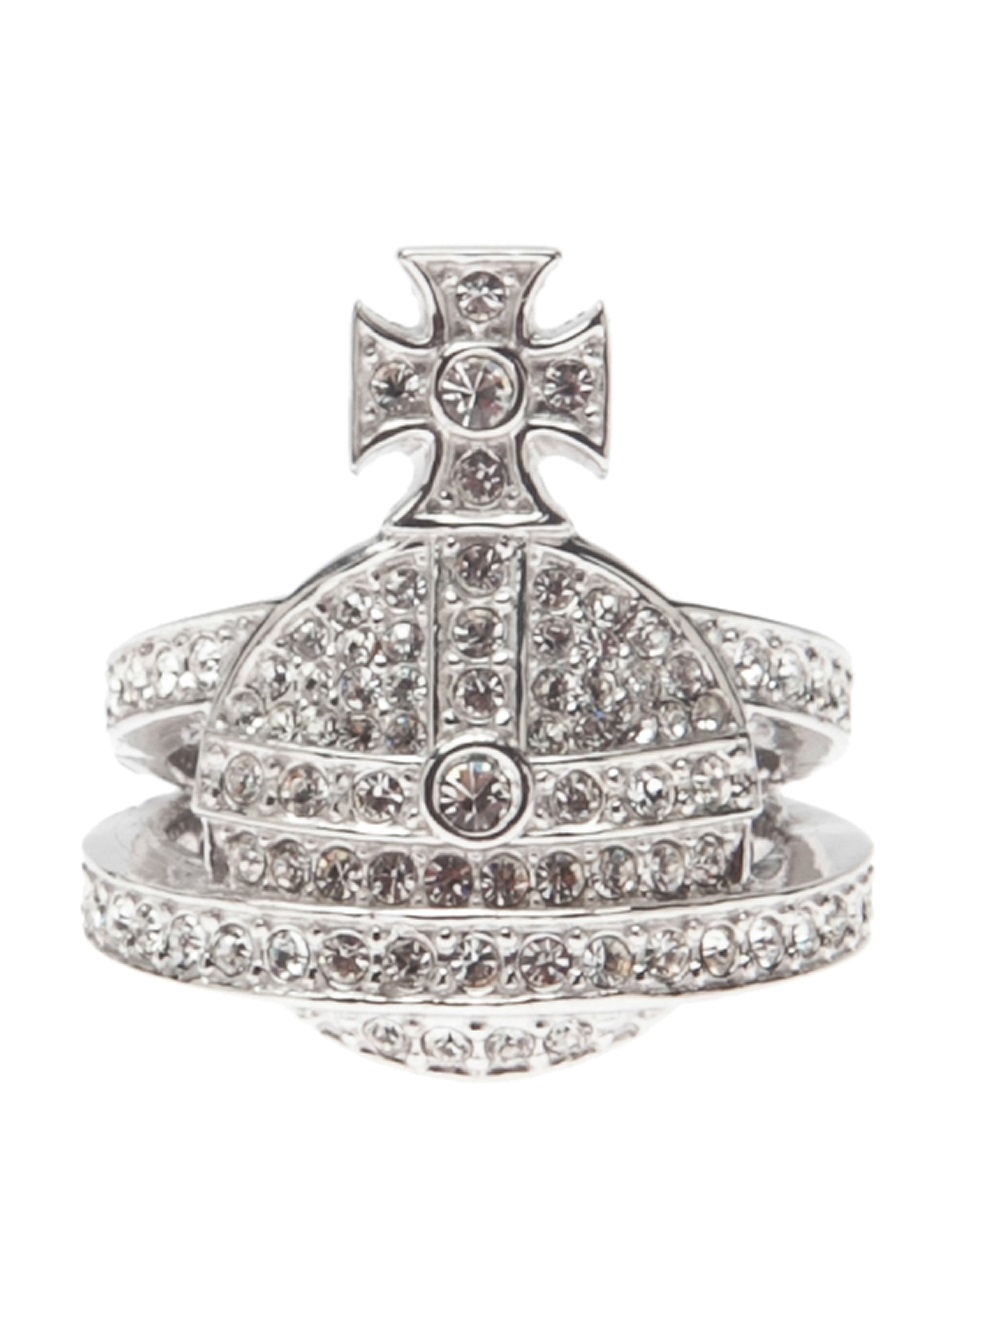 Vivienne Westwood Orb Ring in Metallic - Lyst